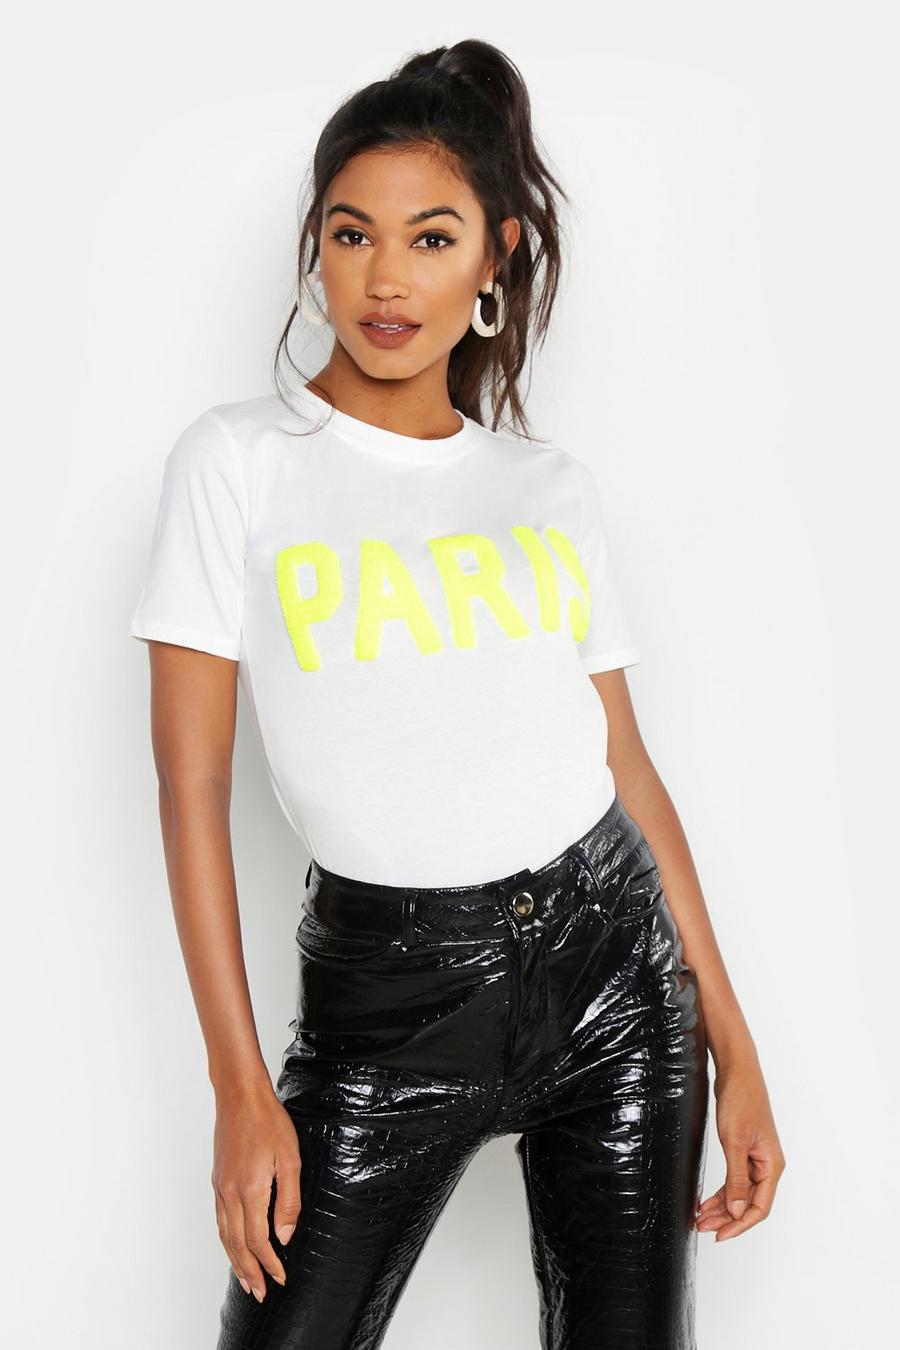 T-shirt testurizzata con scritta Paris, Neon-giallo image number 1